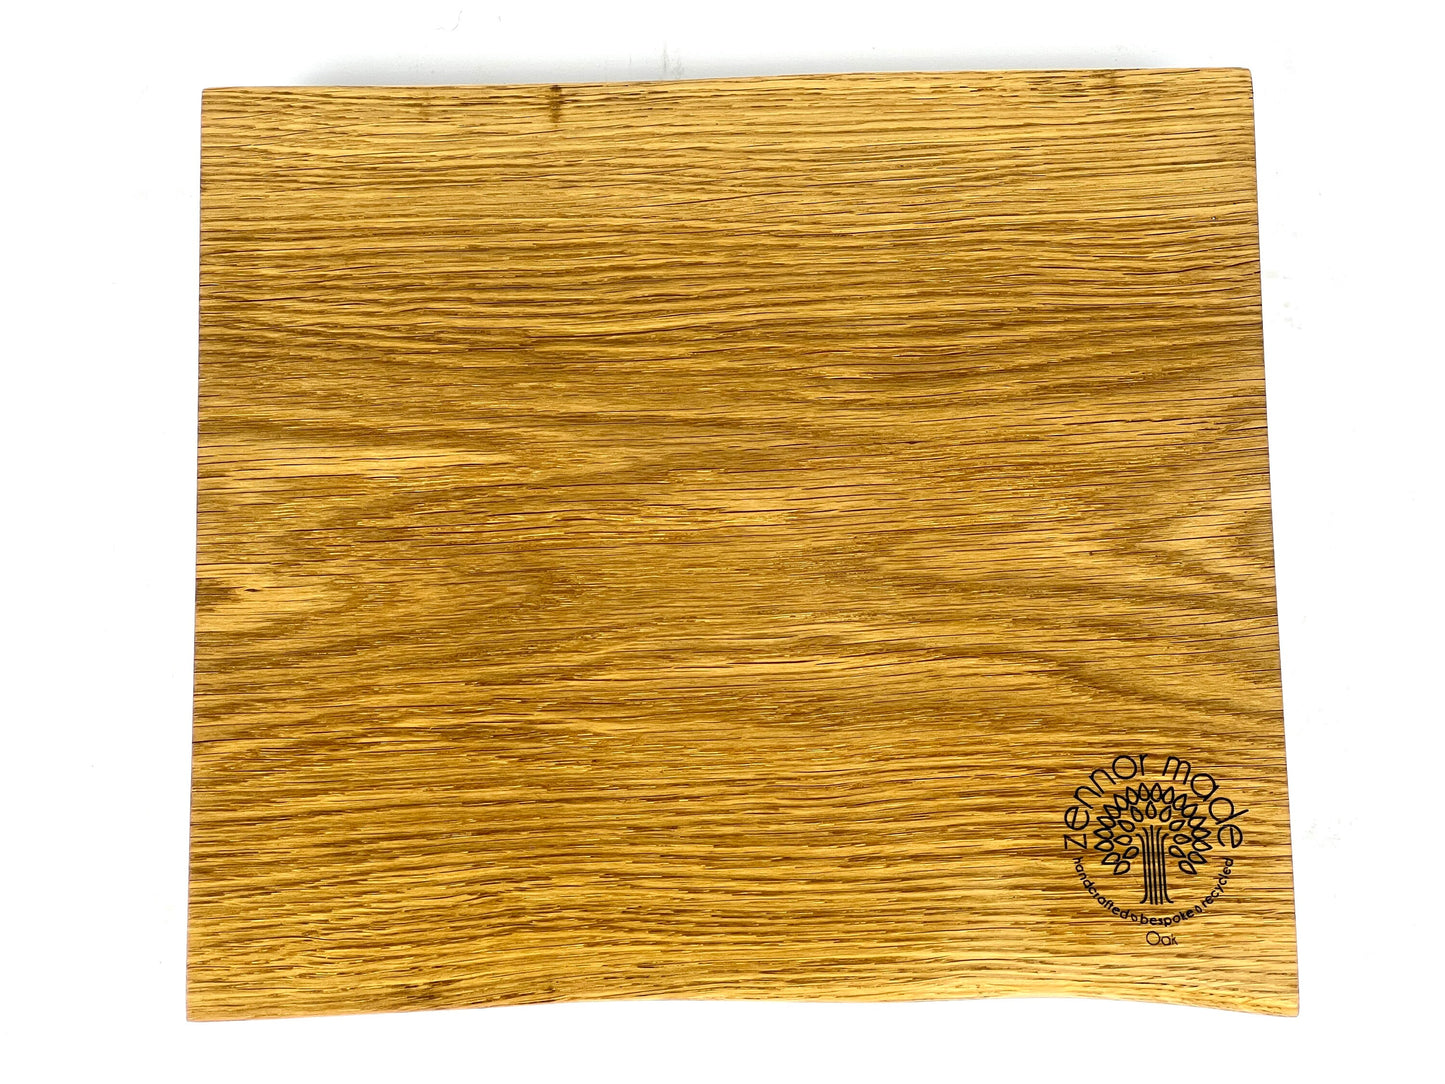 Cornish Oak 24x22 cm Chopping Board